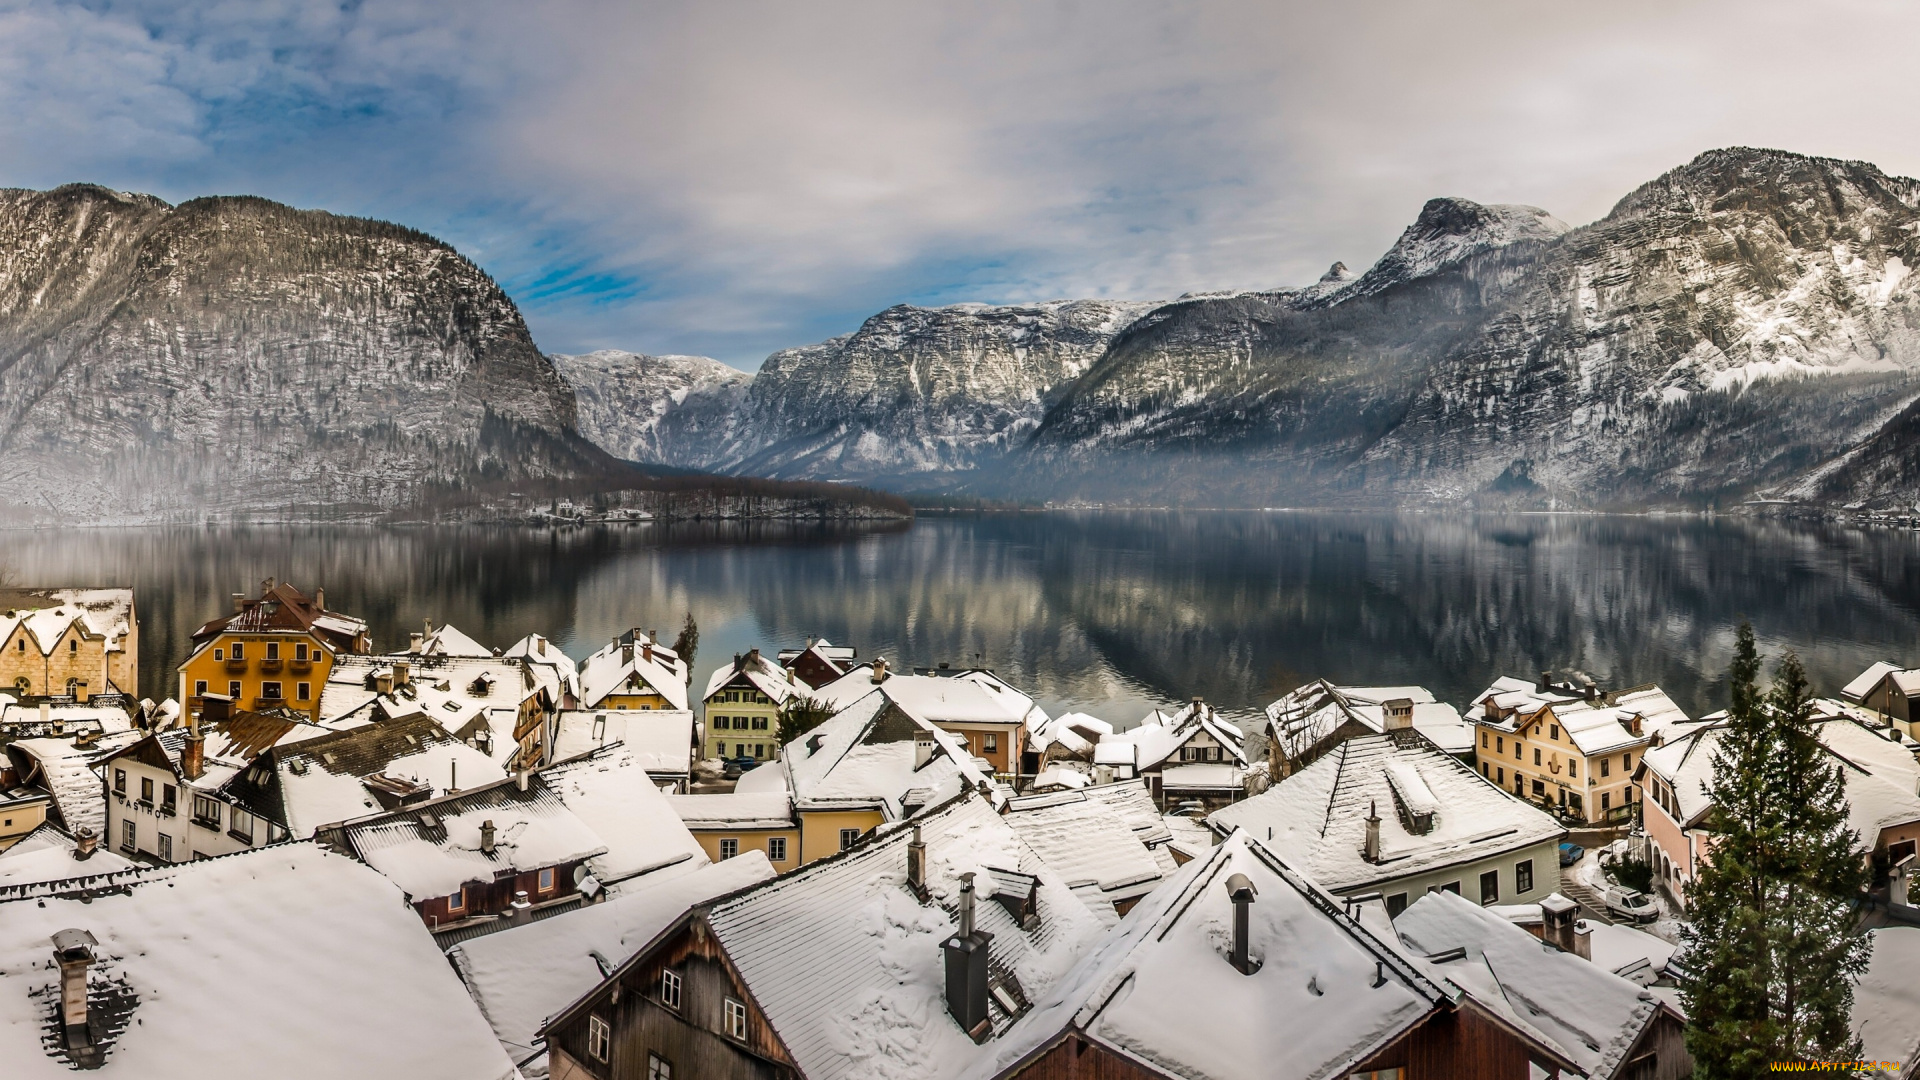 города, -, пейзажи, зима, крыши, дома, горы, озеро, lake, hallstatt, alps, альпы, гальштатское, австрия, гальштат, austria, панорама